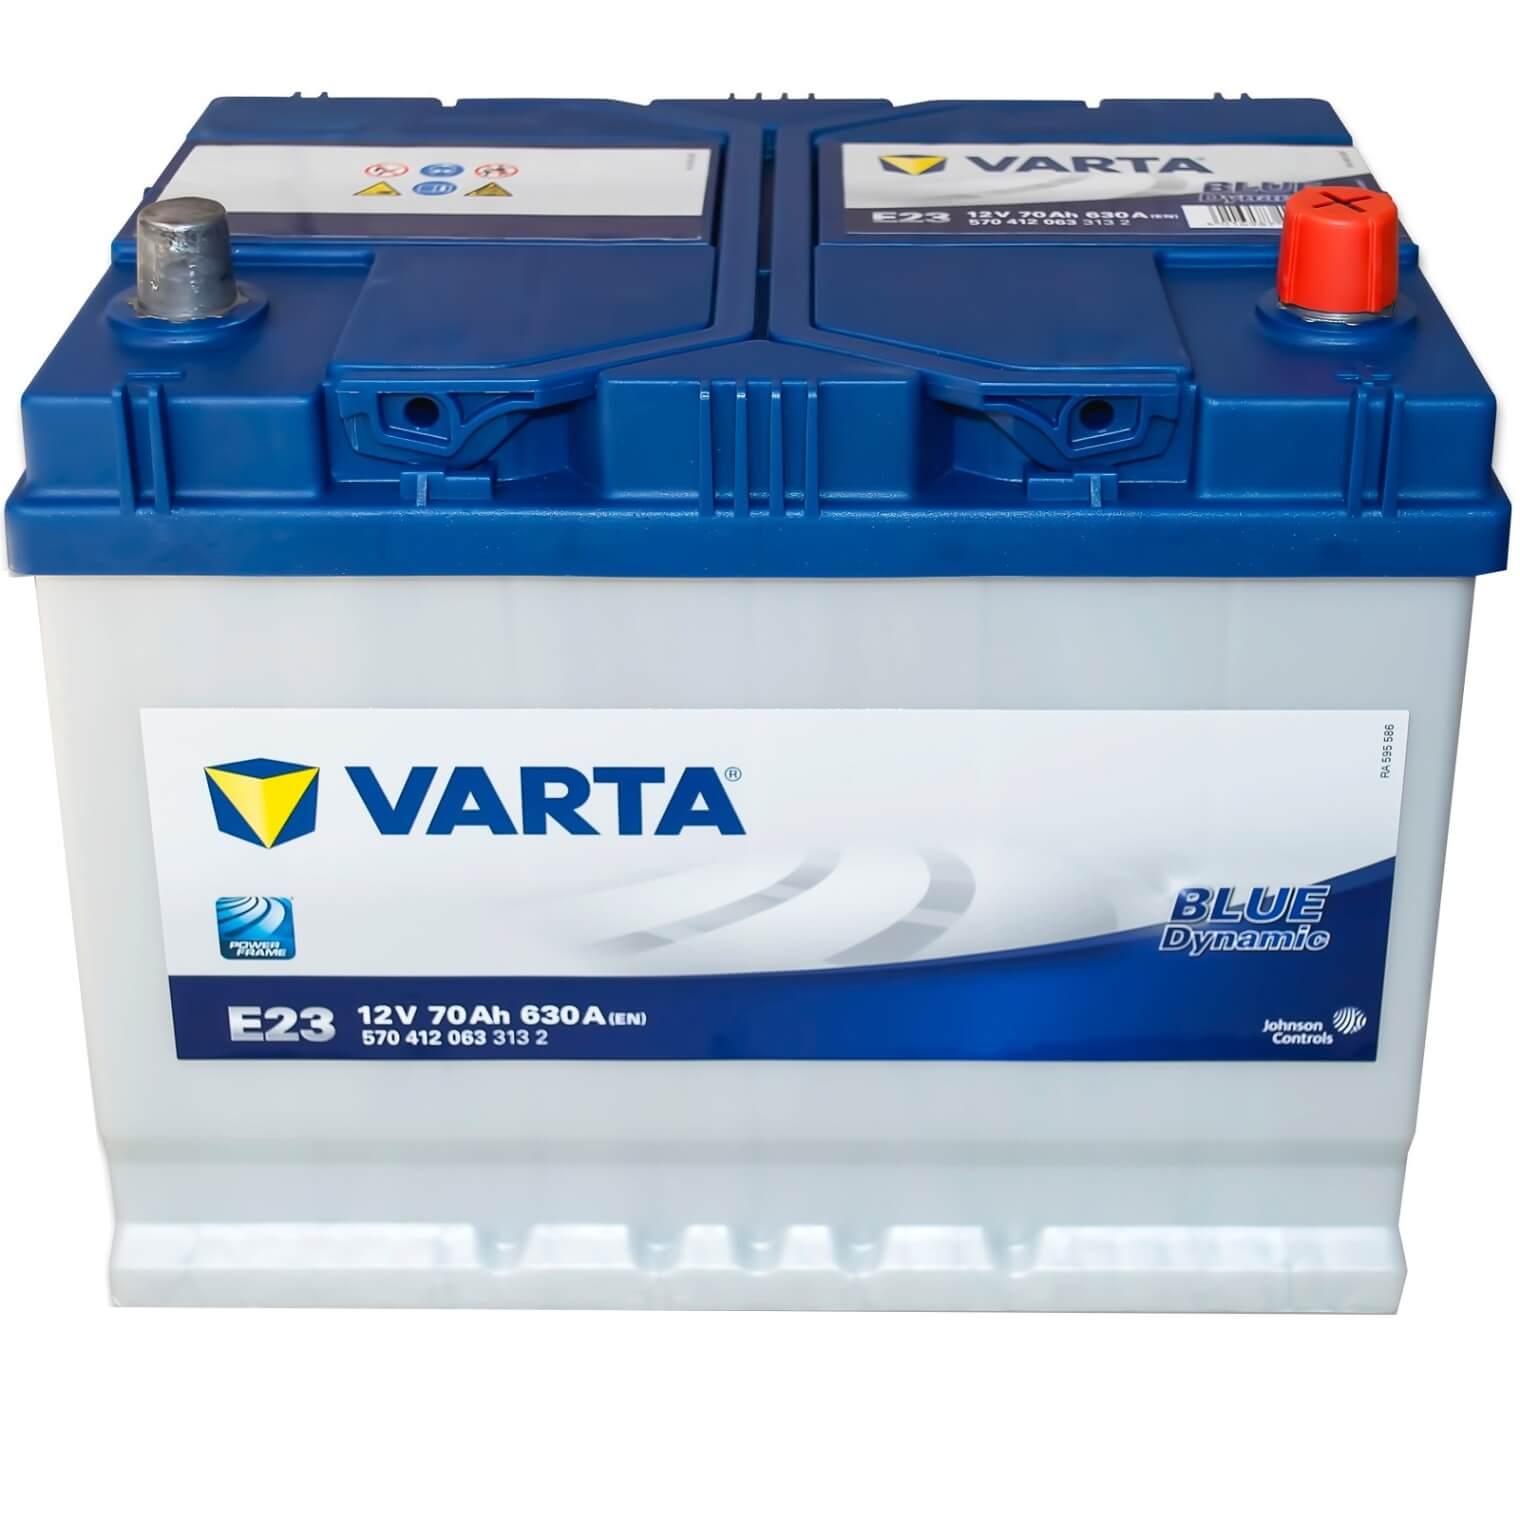 Voltic VP57029 Perfomance 75Ah Autobatterie 570 412 063